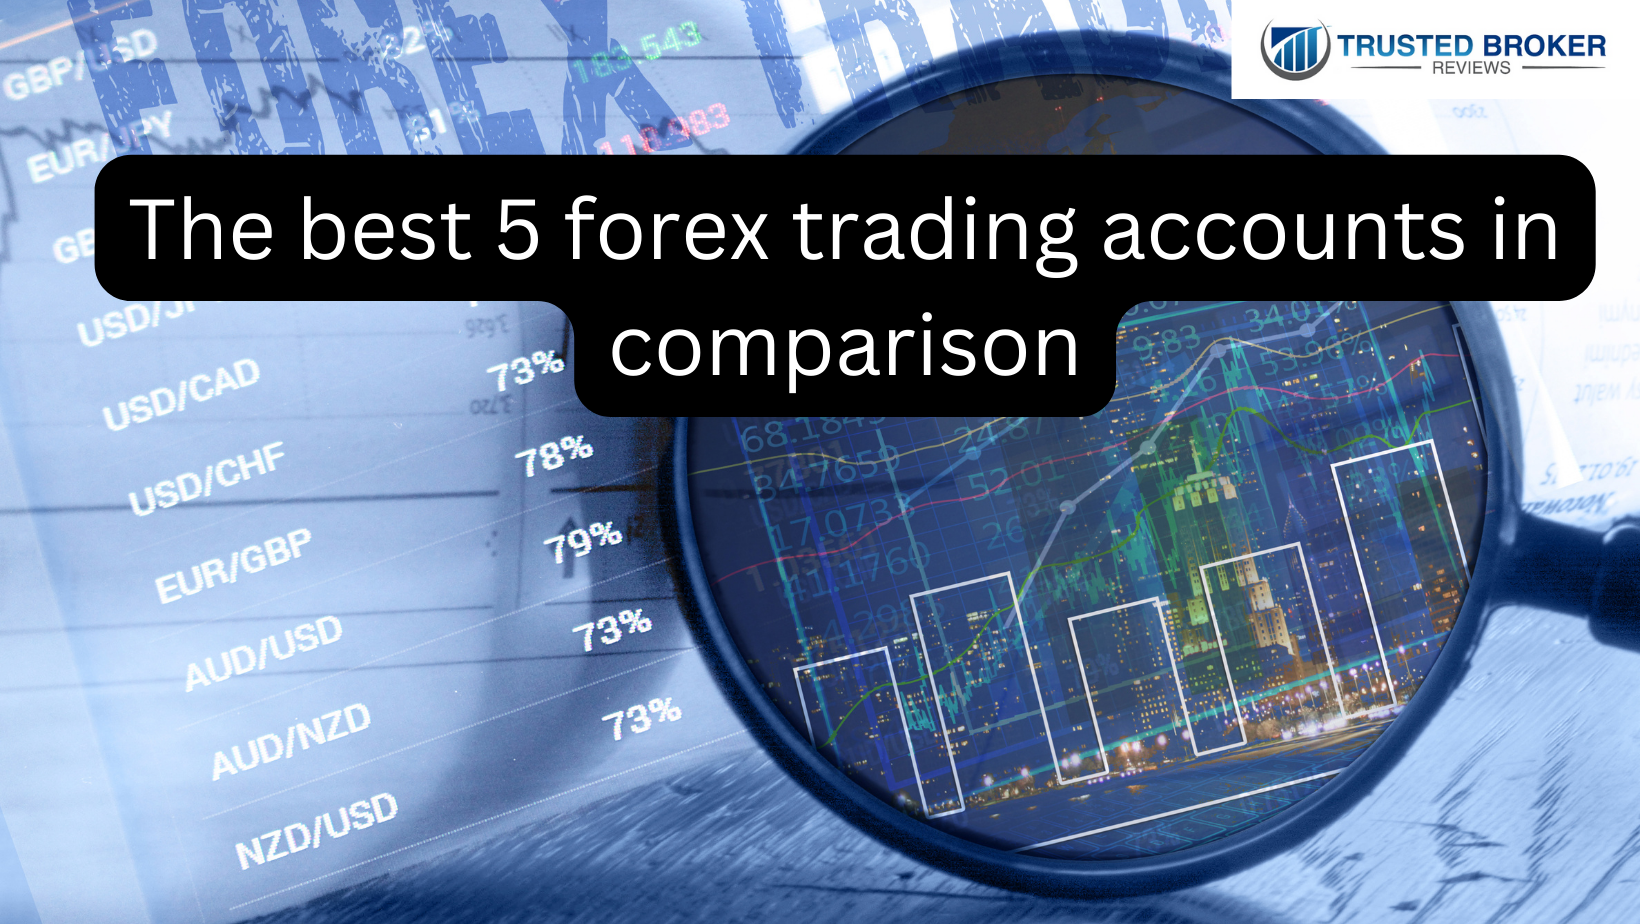 5 akun trading forex terbaik sebagai perbandingan